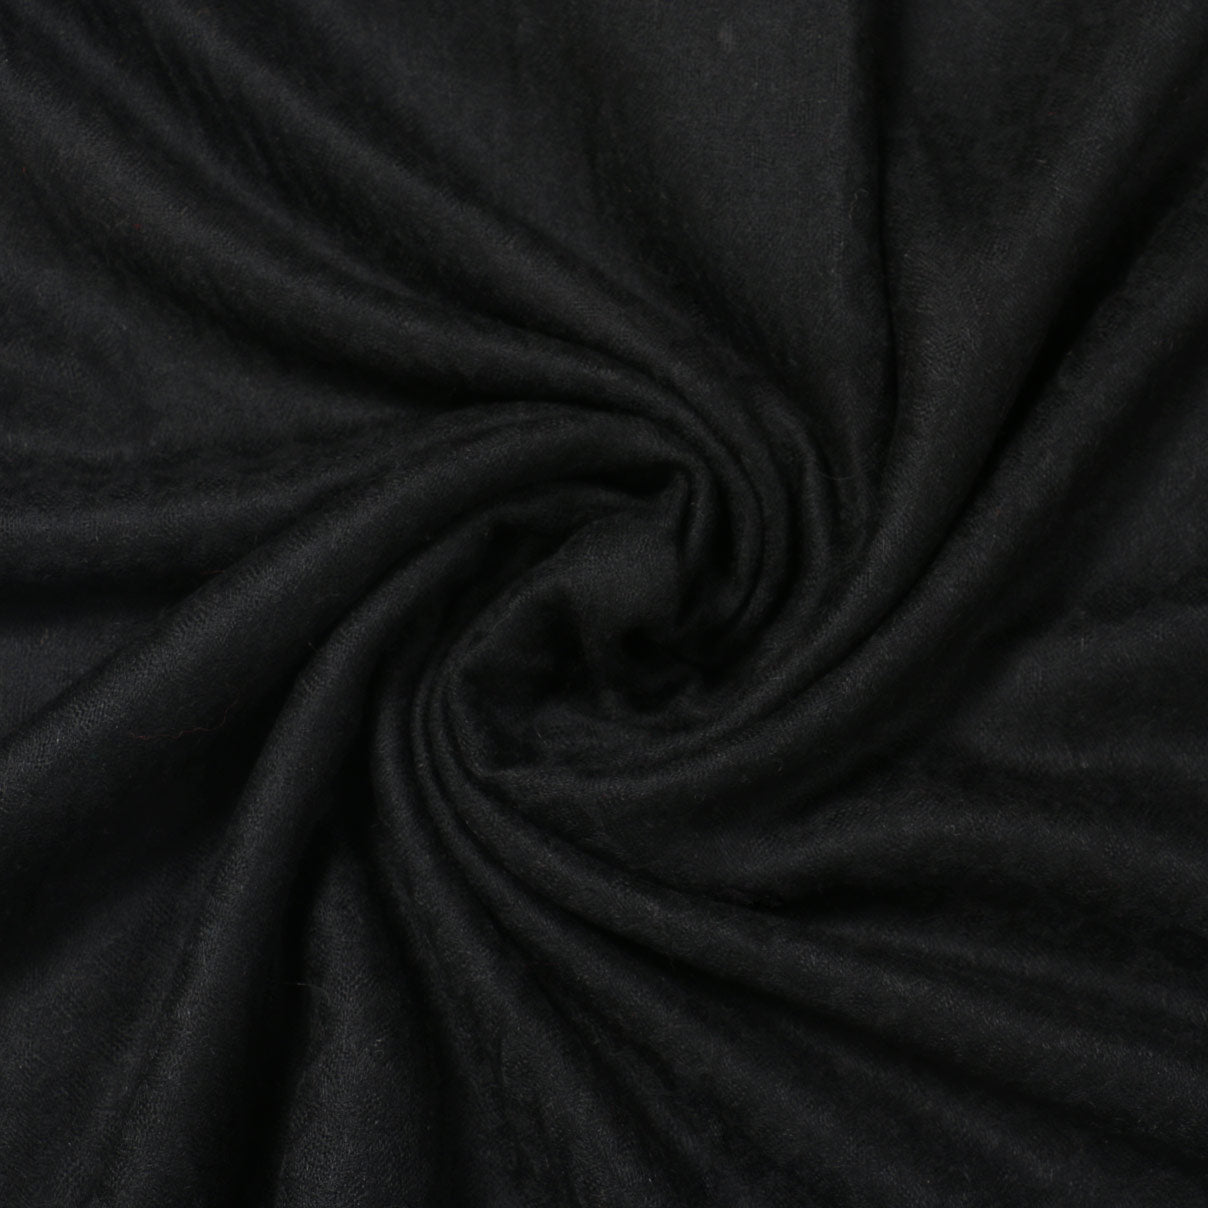 Metal Black Solid Handwoven Cashmere Cashmere Pashmina Stole - Kashmir Box